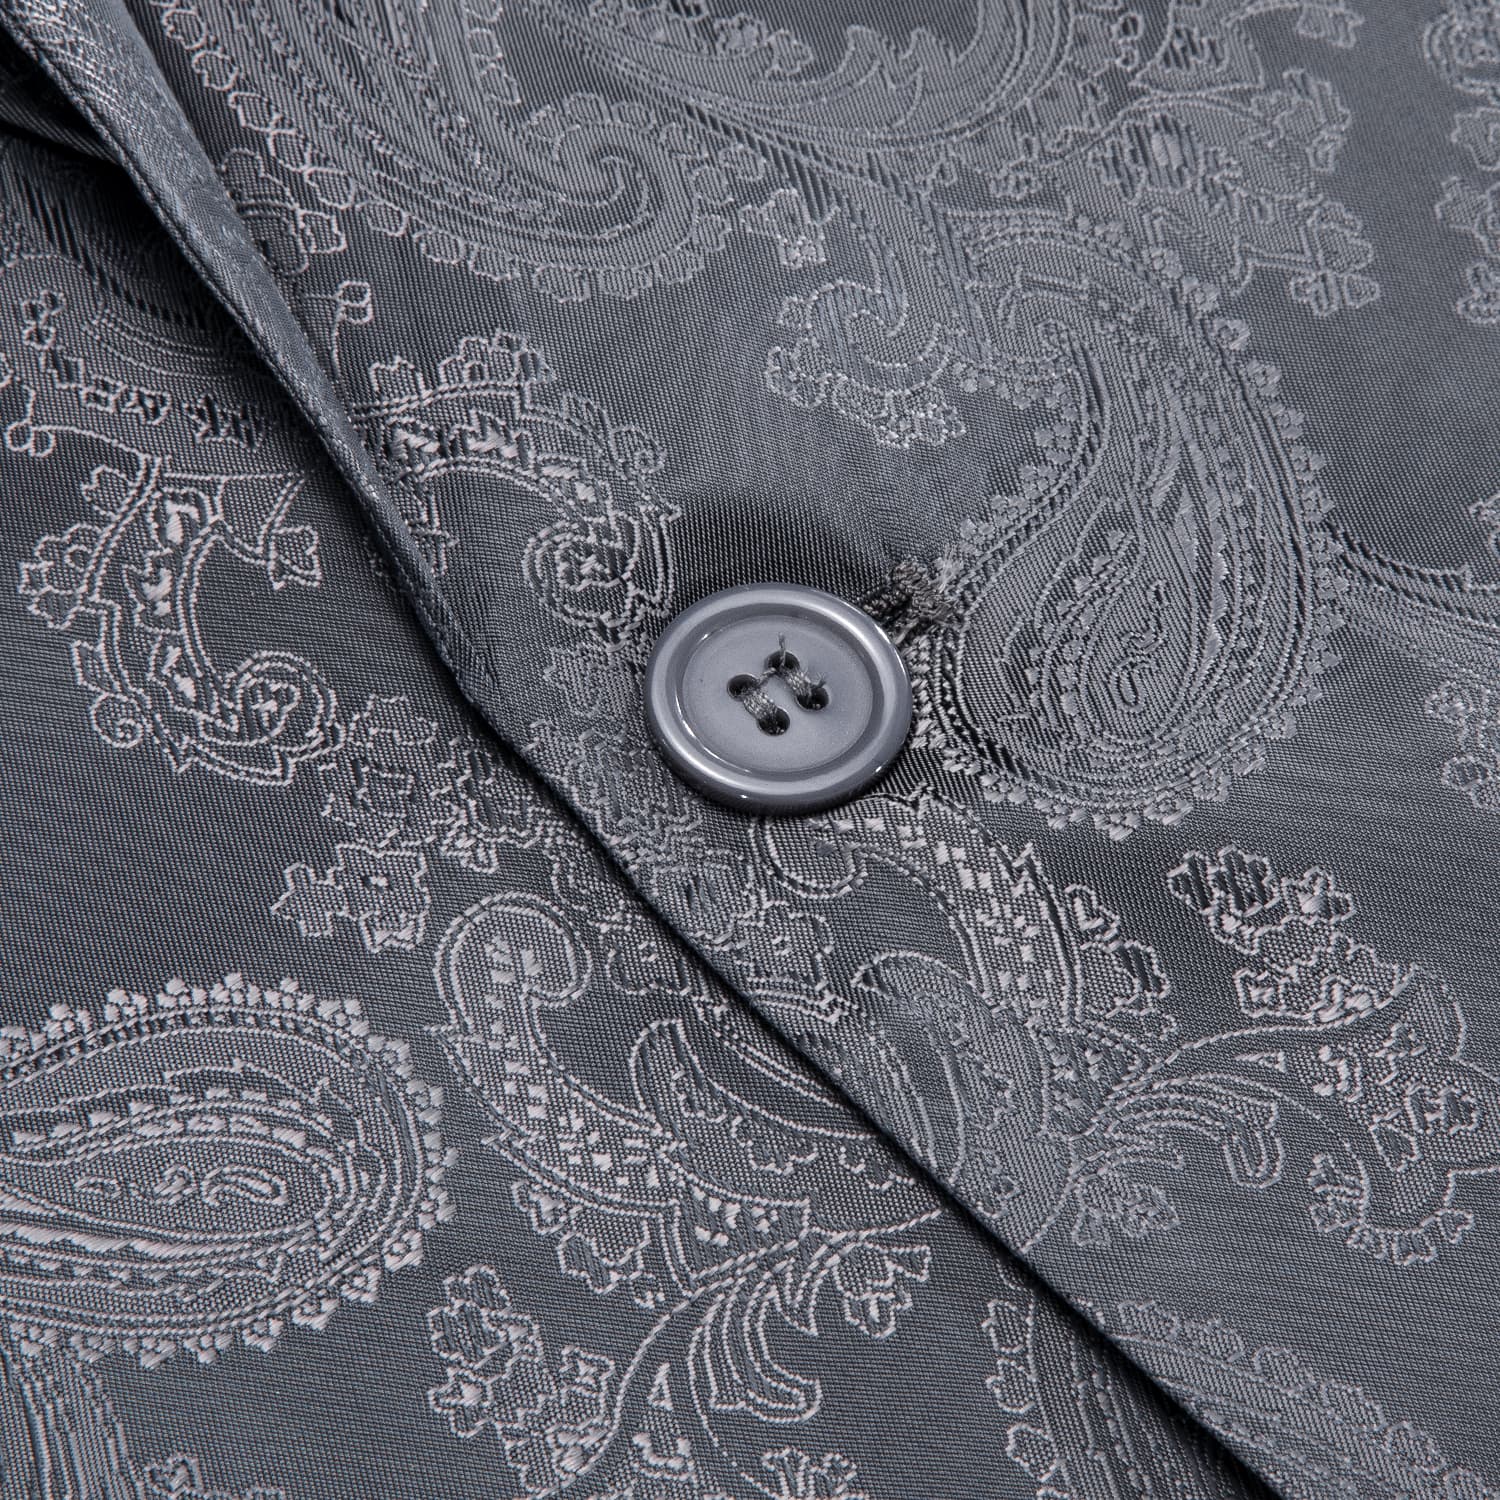 Hi-Tie Notched Lapel Blazer Dark Gray Men's Wedding Paisley Top